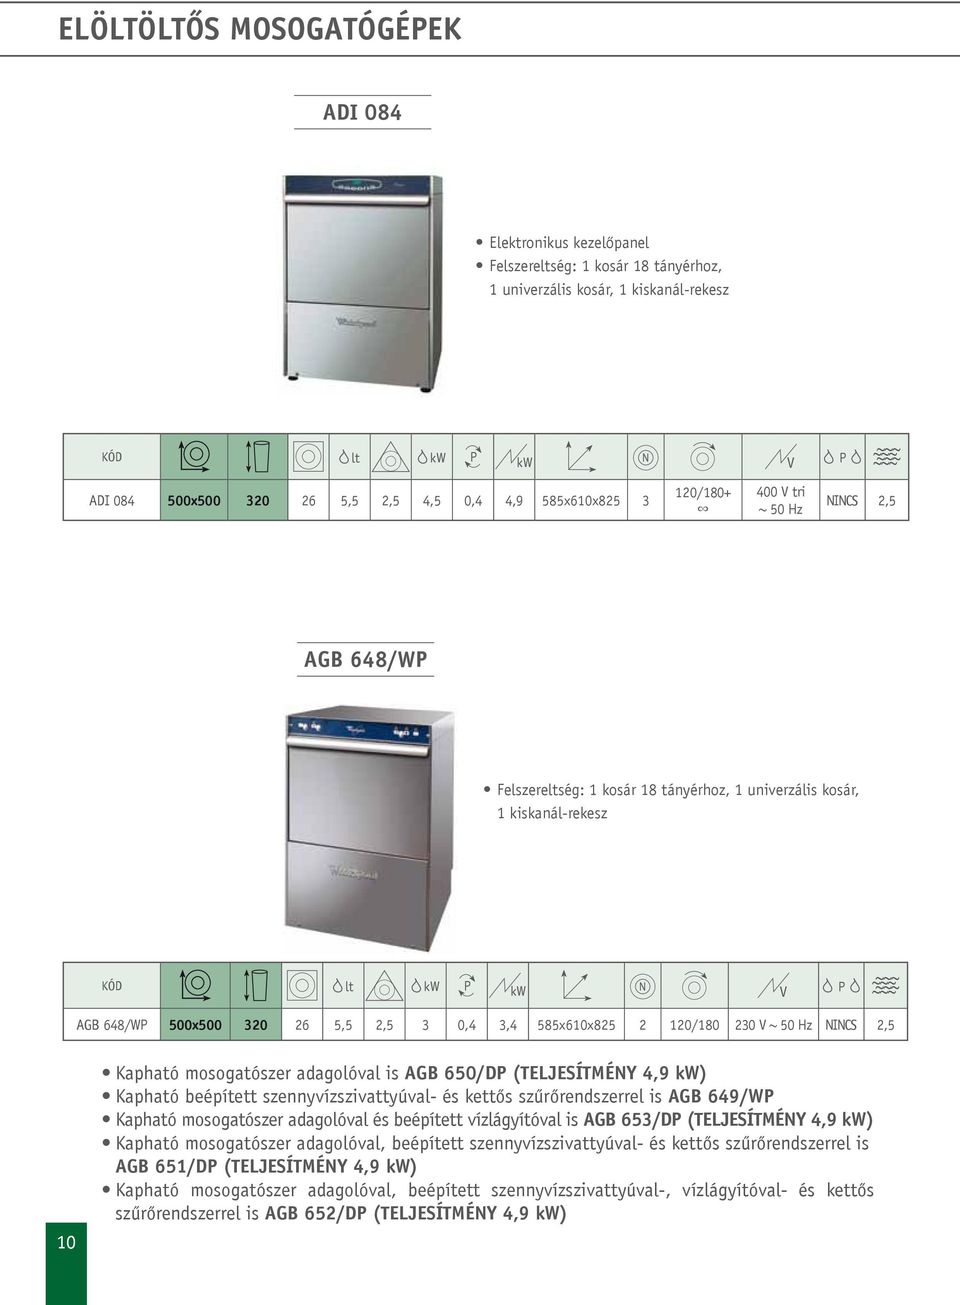 230 NINCS 2,5 10 Kapható mosogatószer adagolóval is AGB 650/D (TELJESÍTMÉNY 4,9 kw) Kapható beépített szennyvízszivattyúval- és kettős szűrőrendszerrel is AGB 649/W Kapható mosogatószer adagolóval és